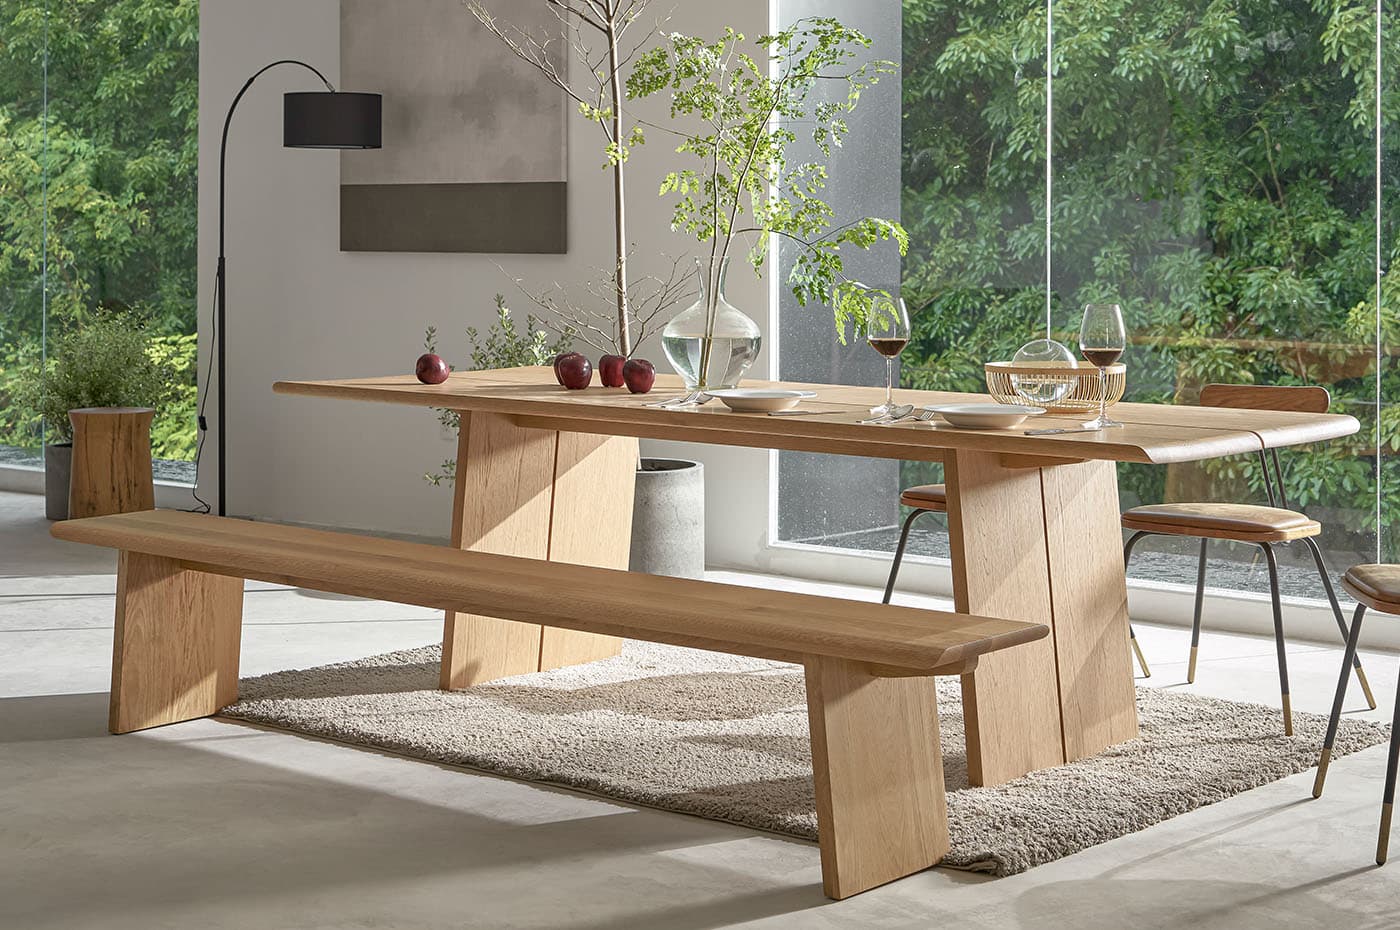 Thiết kế bàn ăn bằng gỗ đơn giản nhưng vẫn tạo điểm nhấn cho căn bếp